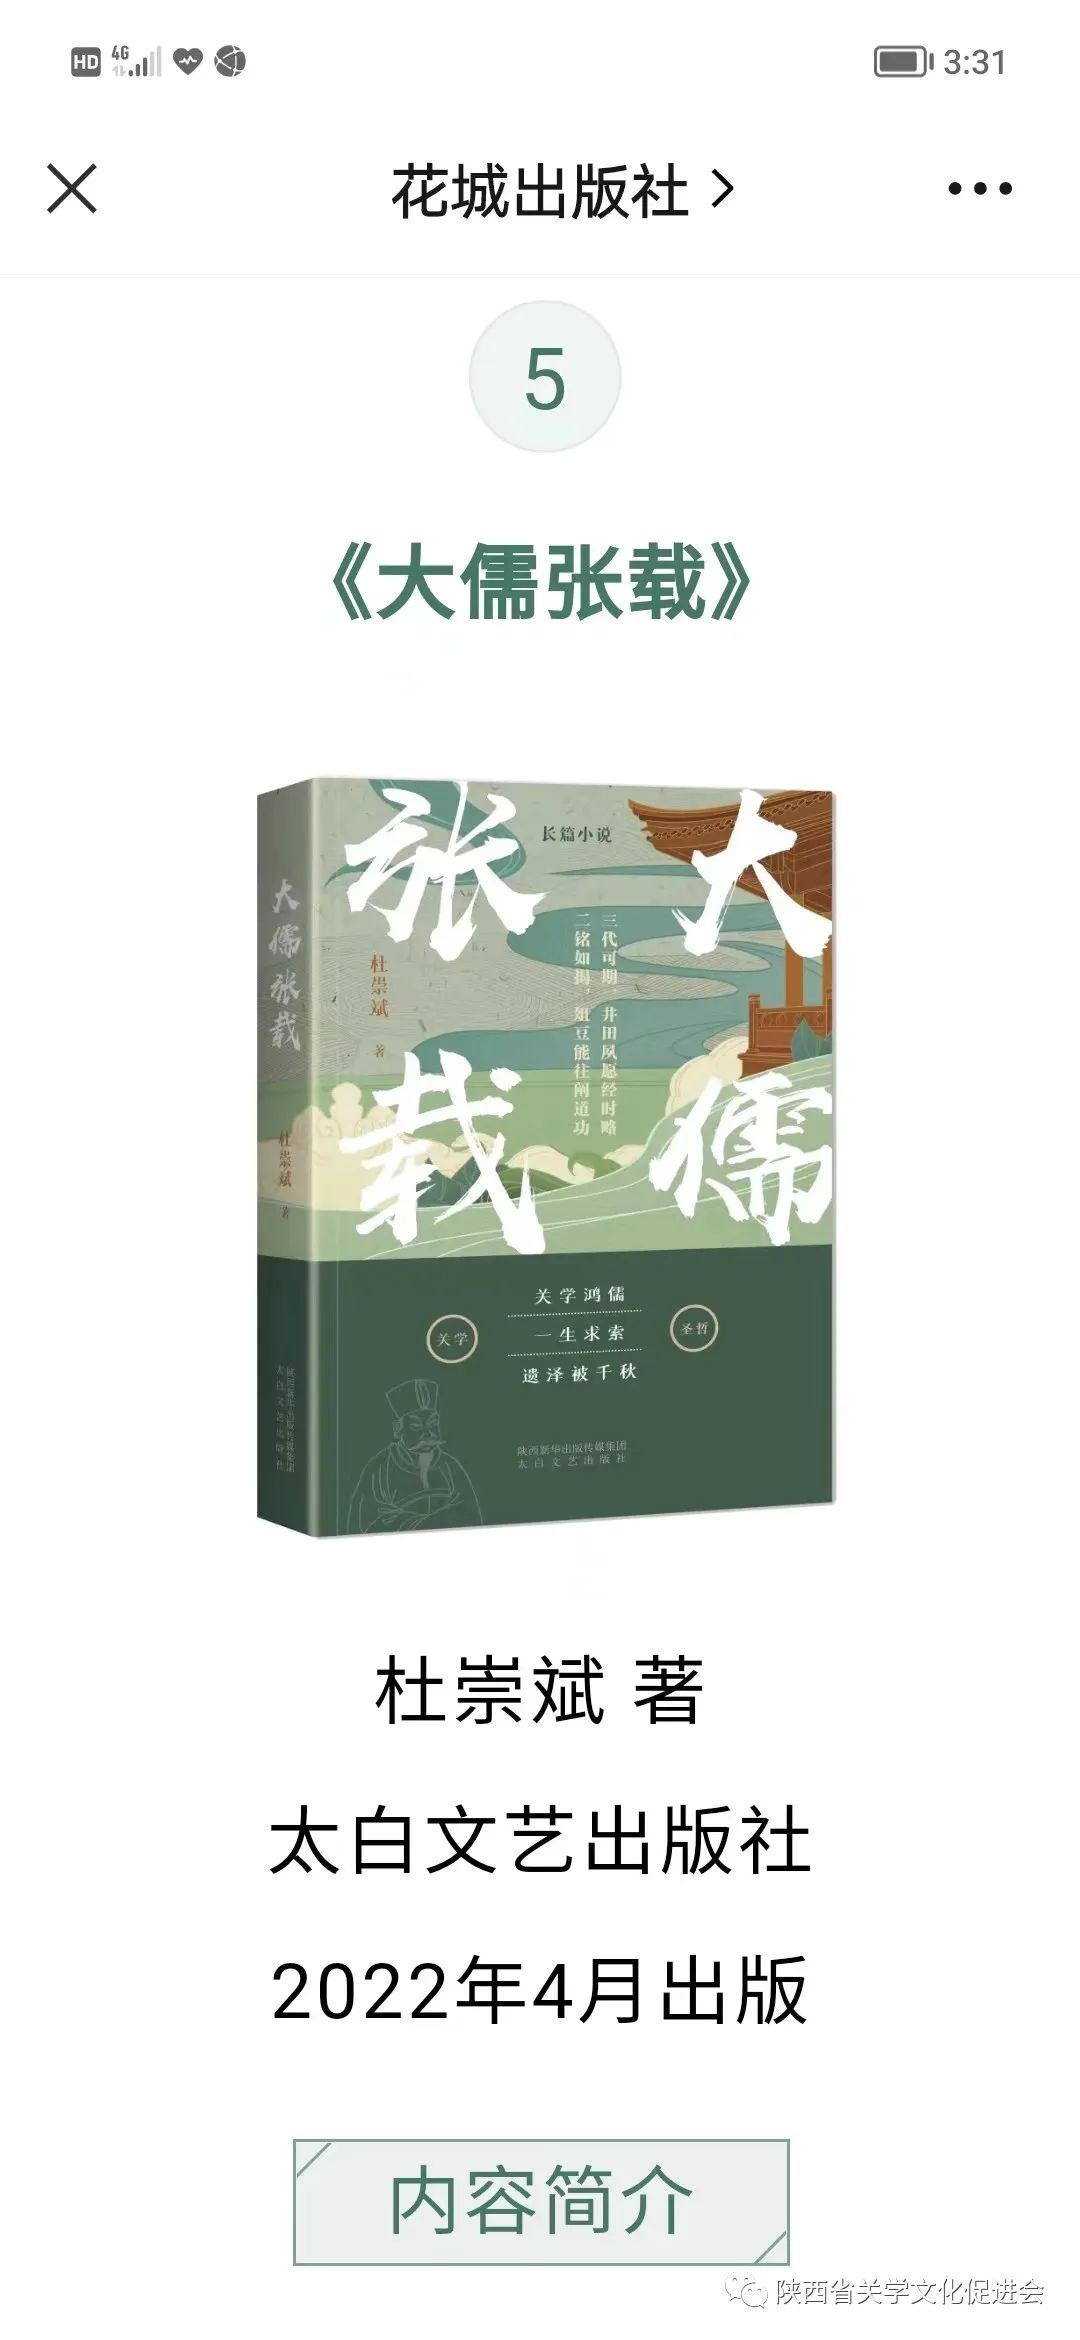 《大儒张载》入选丨中国出版界文艺联合书单8月榜单